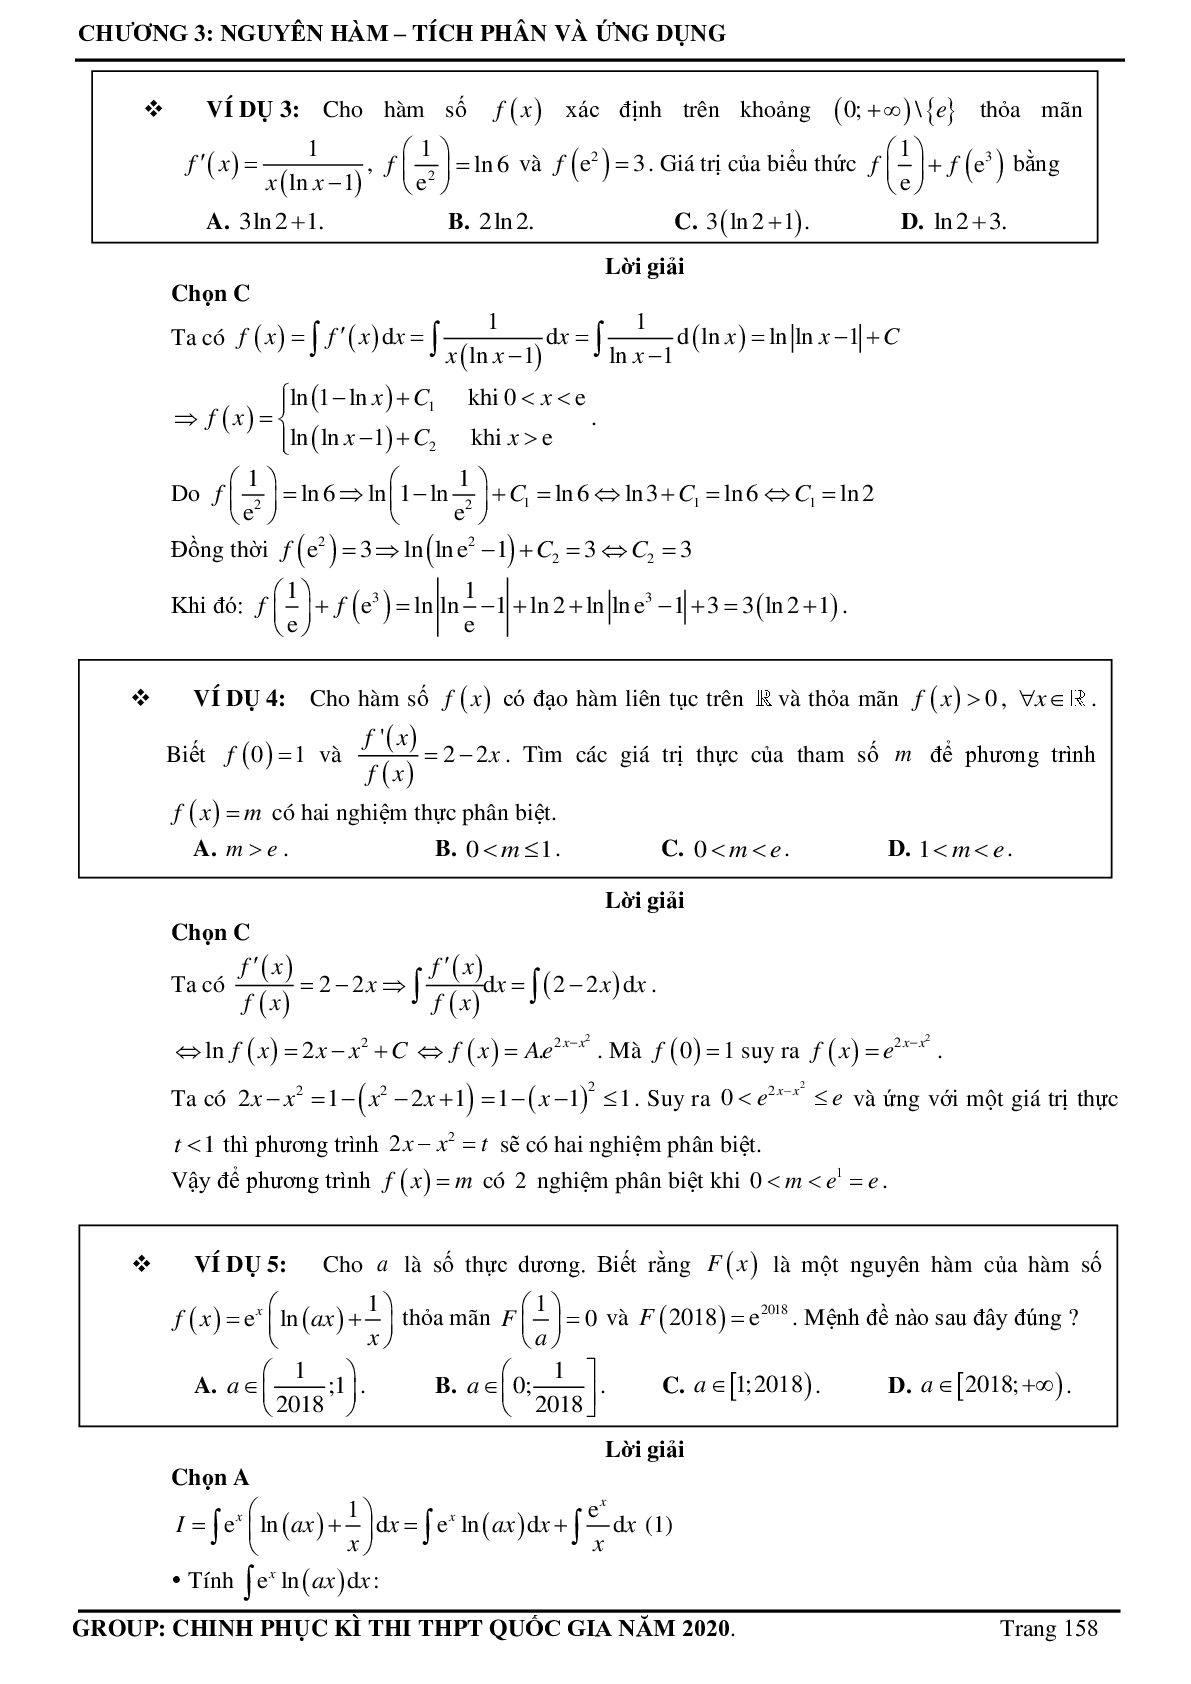 Tuyển chọn các bài toán Nguyên hàm - Tích phân Vận dụng cao thường xuất hiện trong đề thi - có đáp án chi tiết (trang 9)